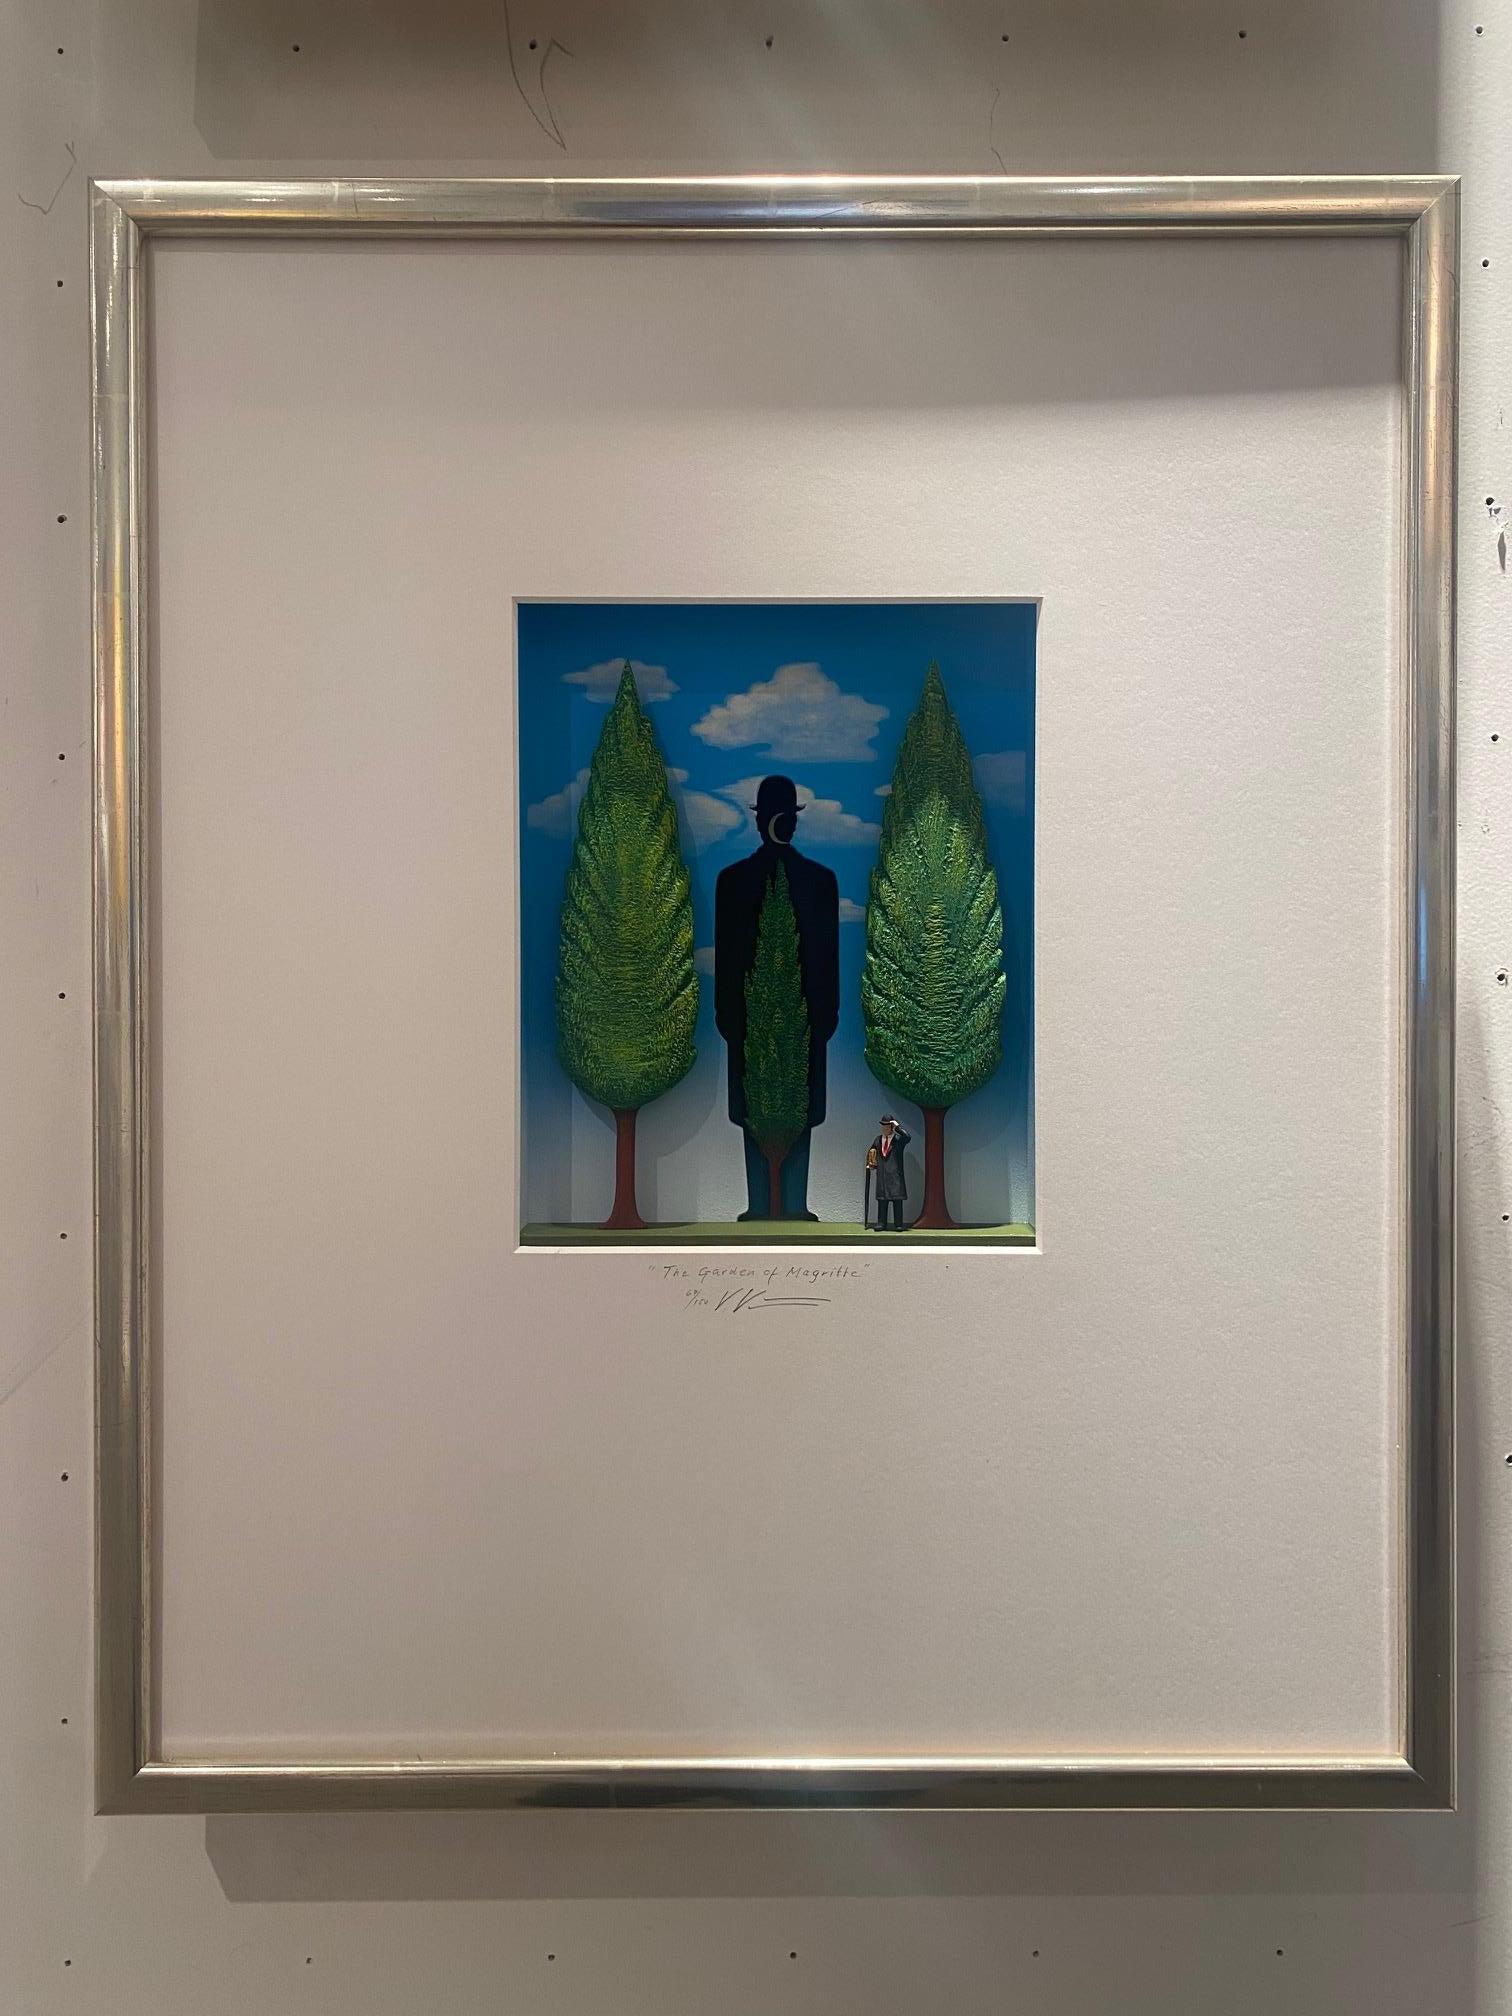 The Garden of Magritte (Le jardin de Magritte) - œuvre d'art contemporaine hommage au surréalisme belge  - Assemblage Mixed Media Art par Volker Kuhn